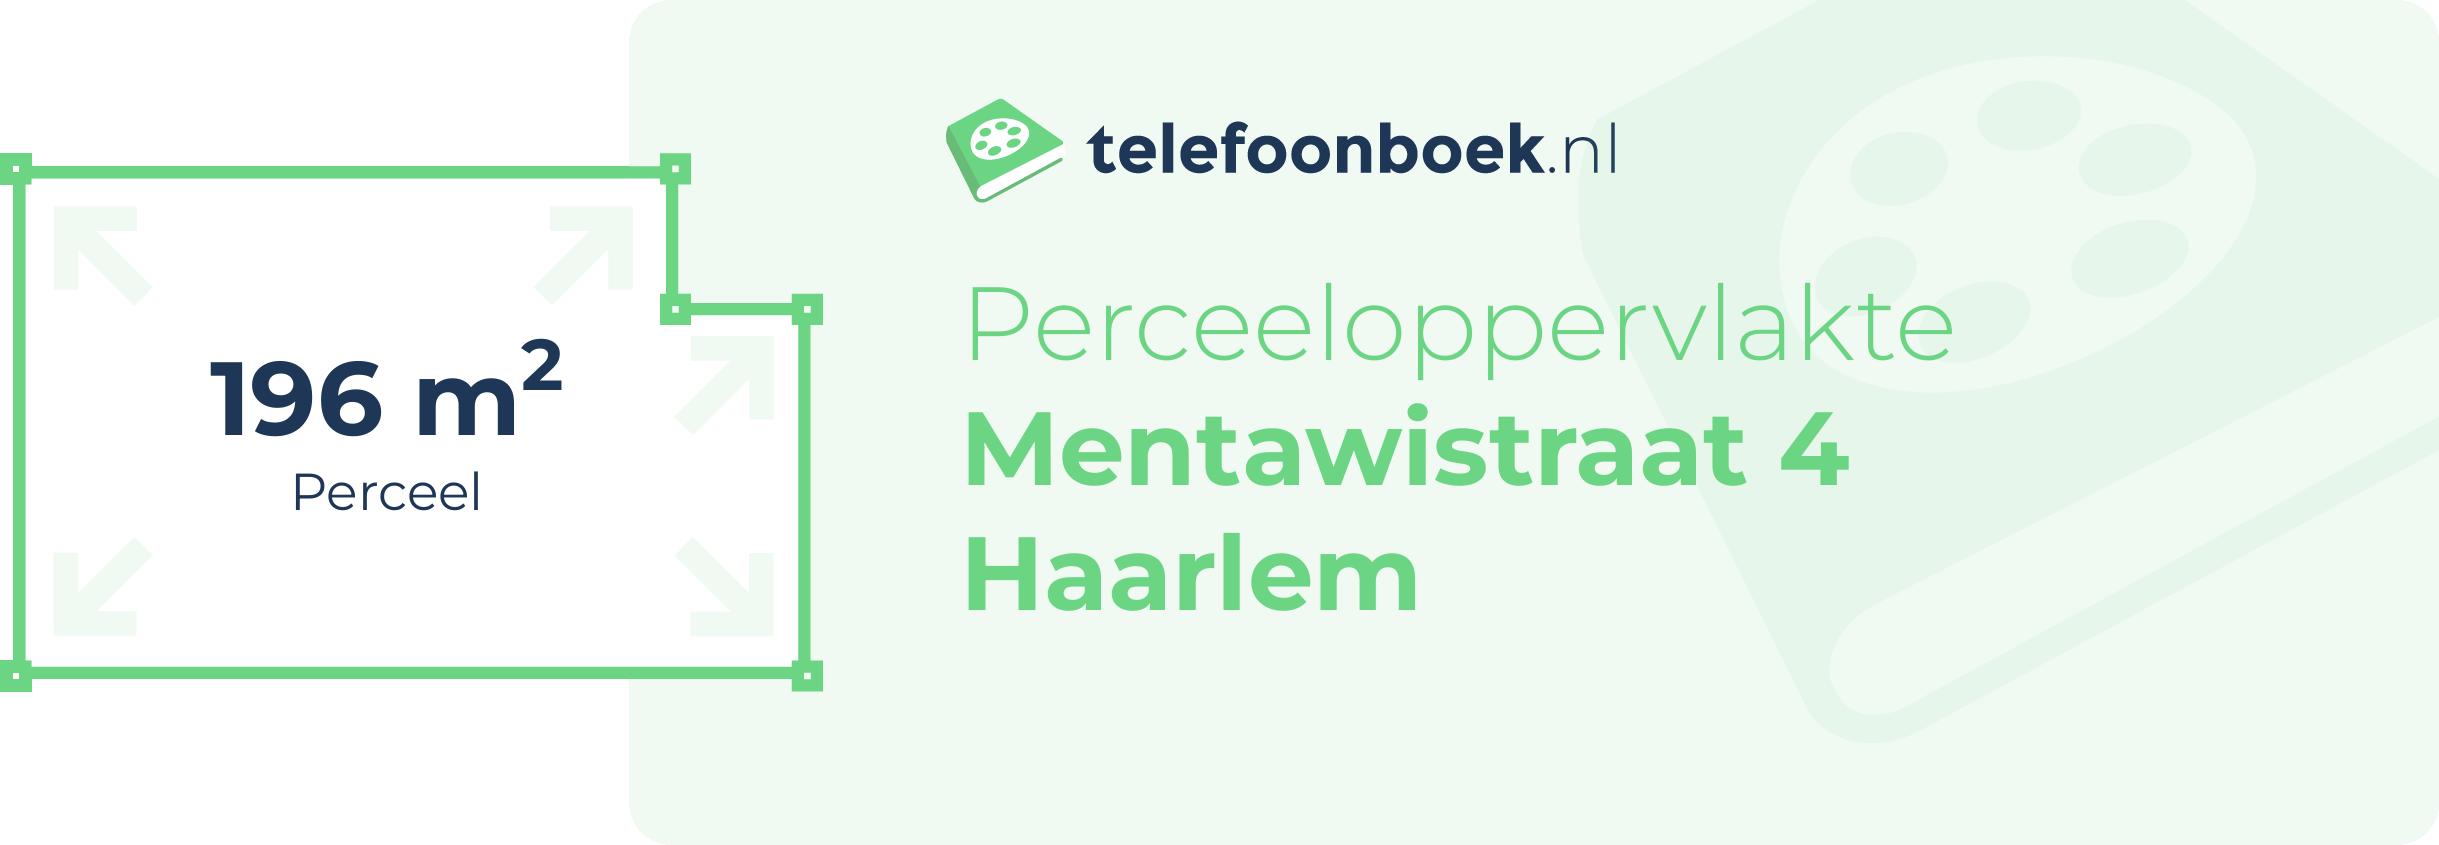 Perceeloppervlakte Mentawistraat 4 Haarlem